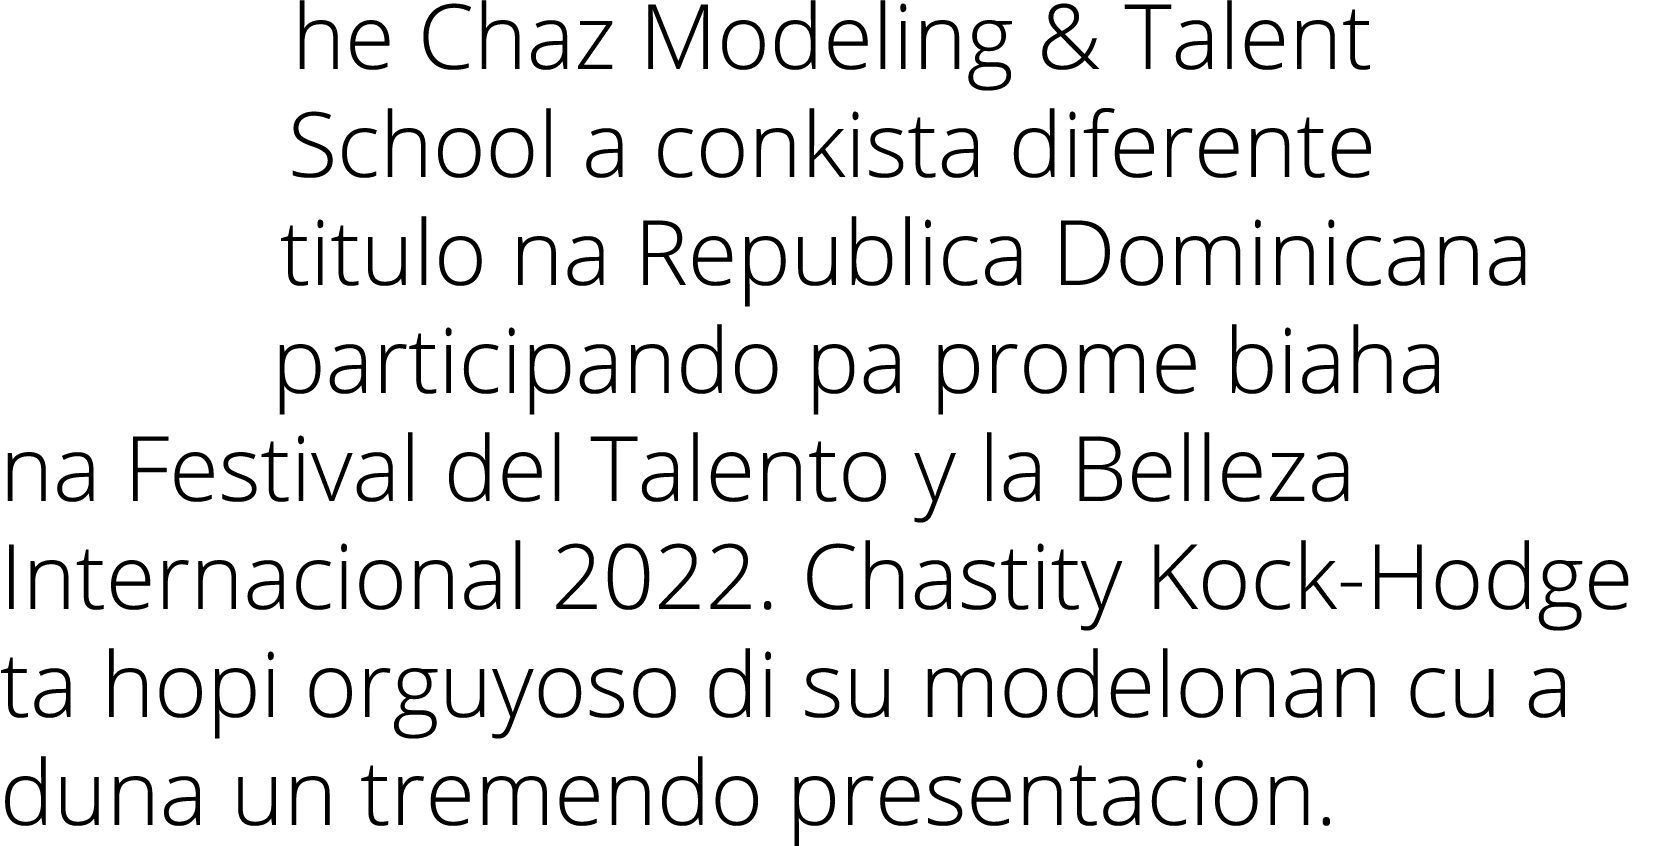 he Chaz Modeling & Talent School a conkista diferente titulo na Republica Dominicana participando pa prome biaha na F...